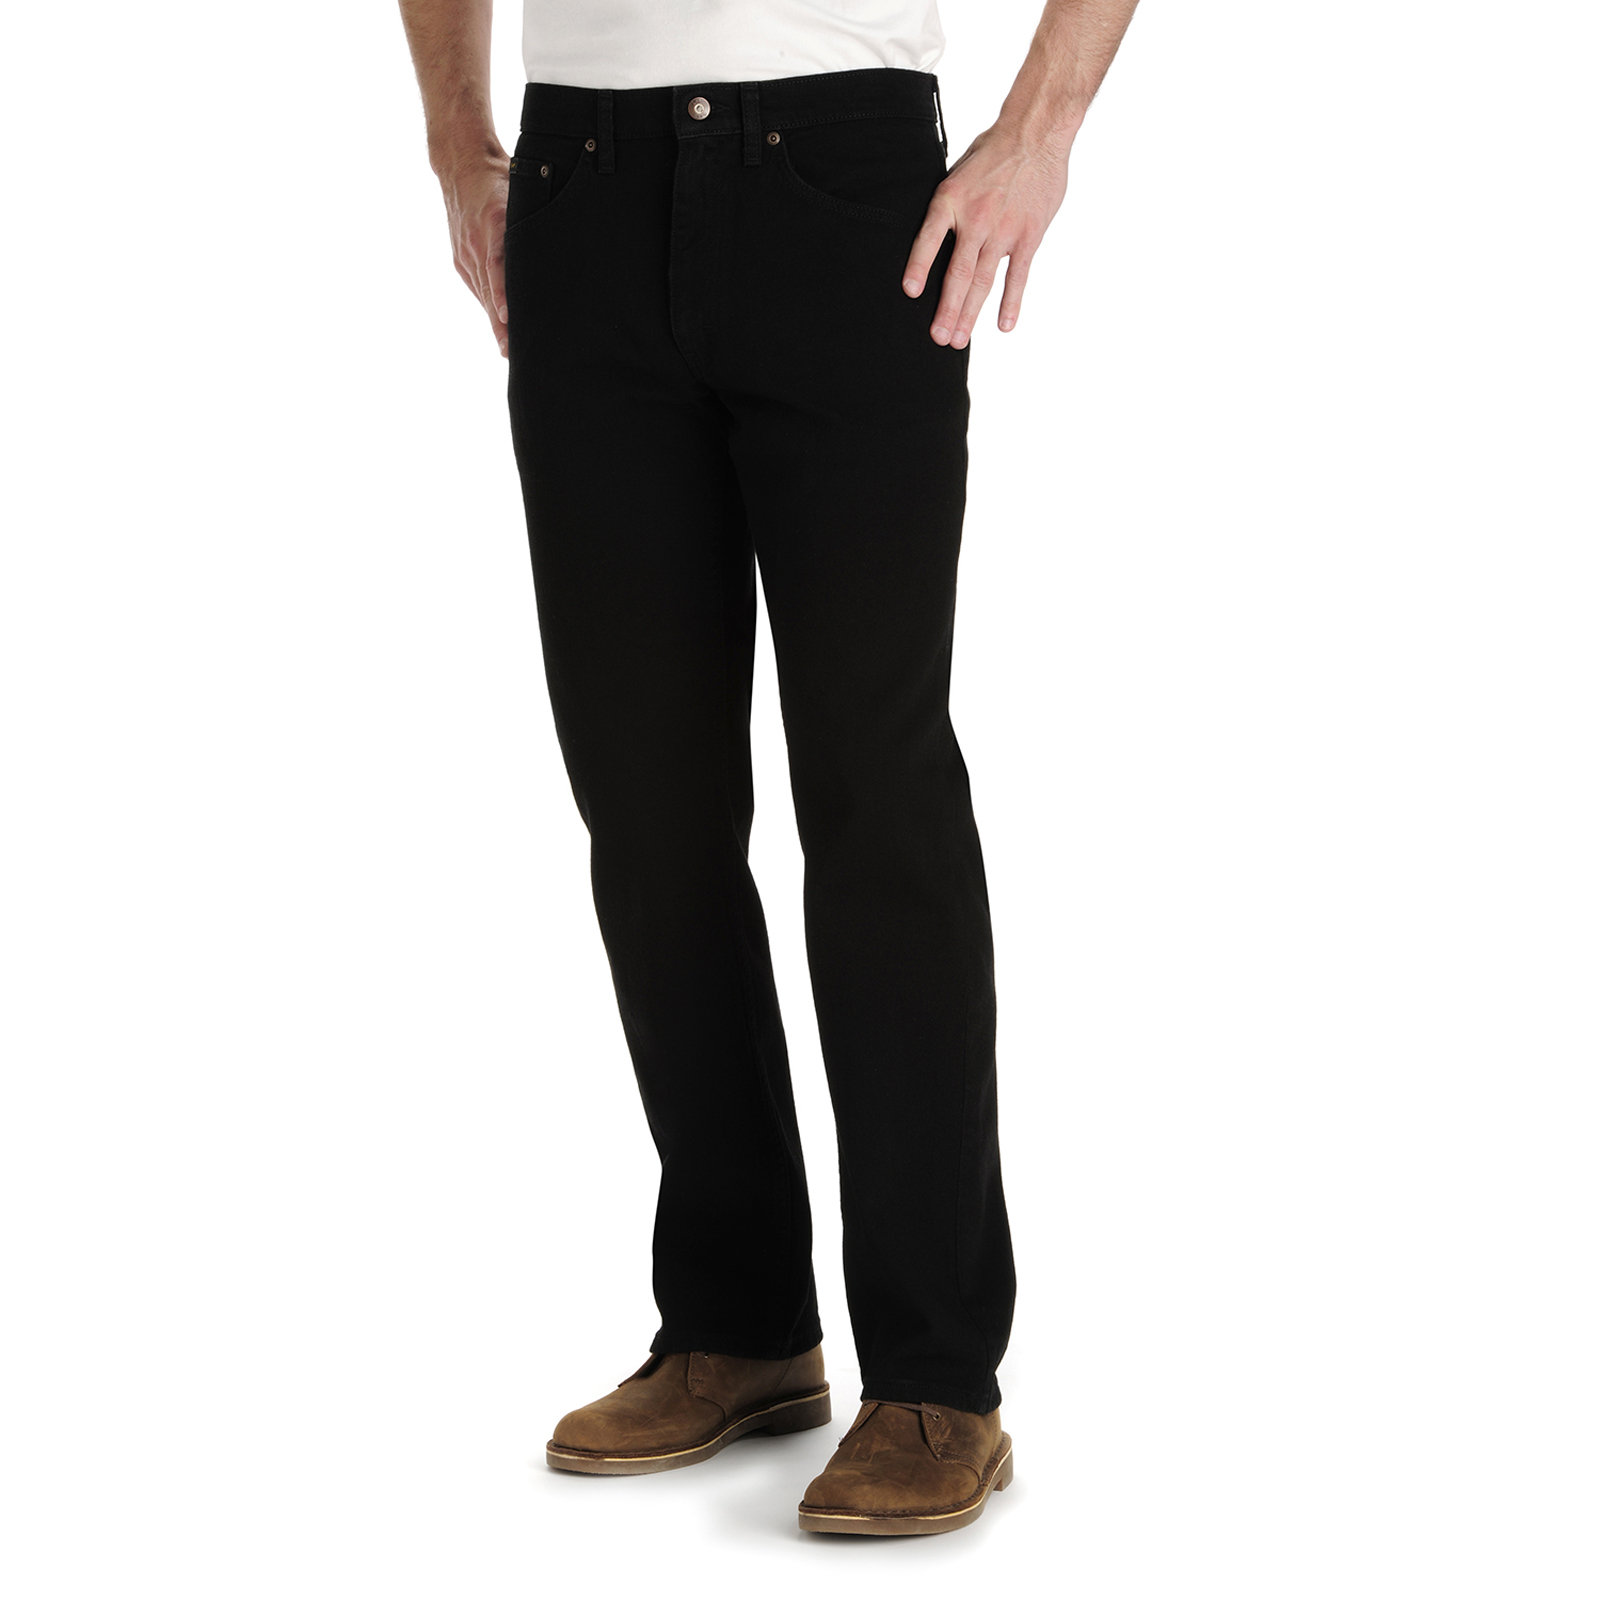 LEE Men's Premium Select Classic Fit Jeans | Shop Your Way: Online ...